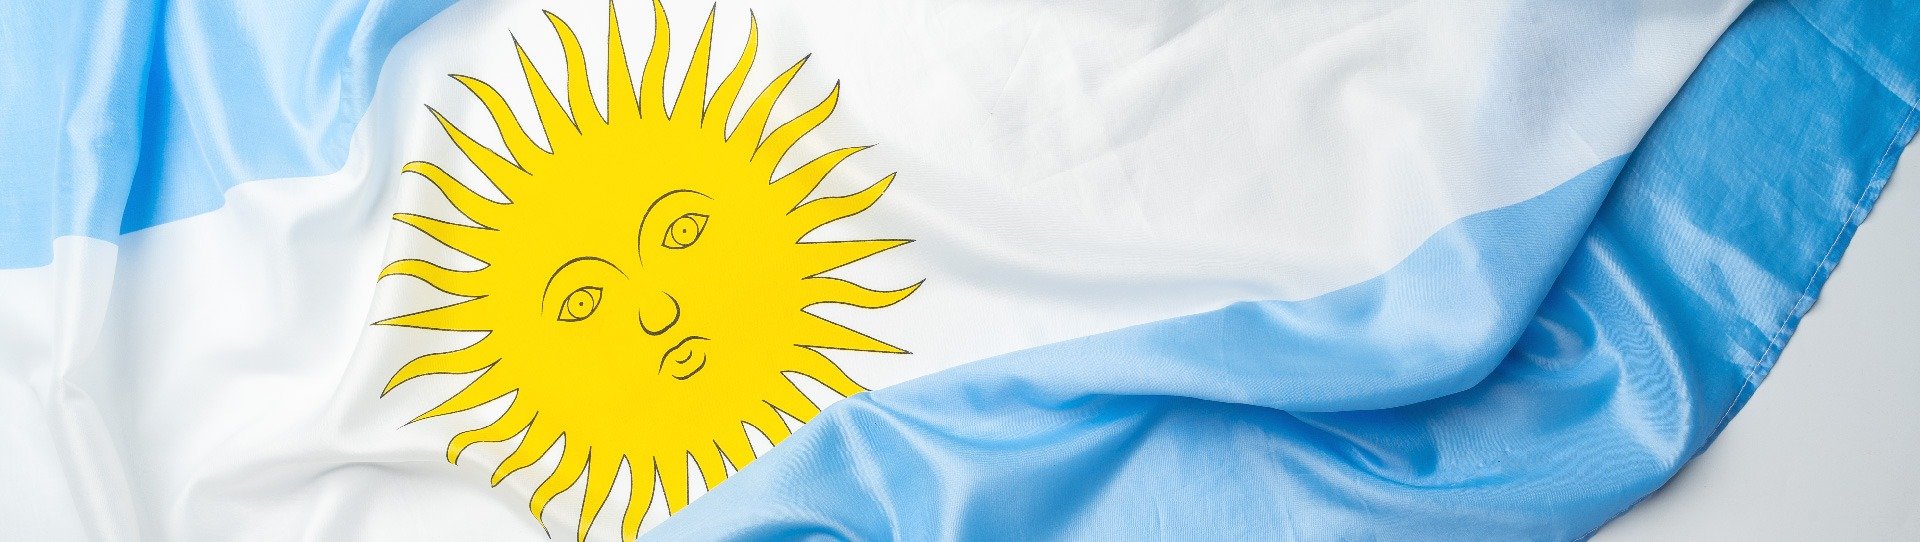 Celebremos el Día de la Bandera Argentina con el Maridaje Perfecto, Vino y Tradiciones